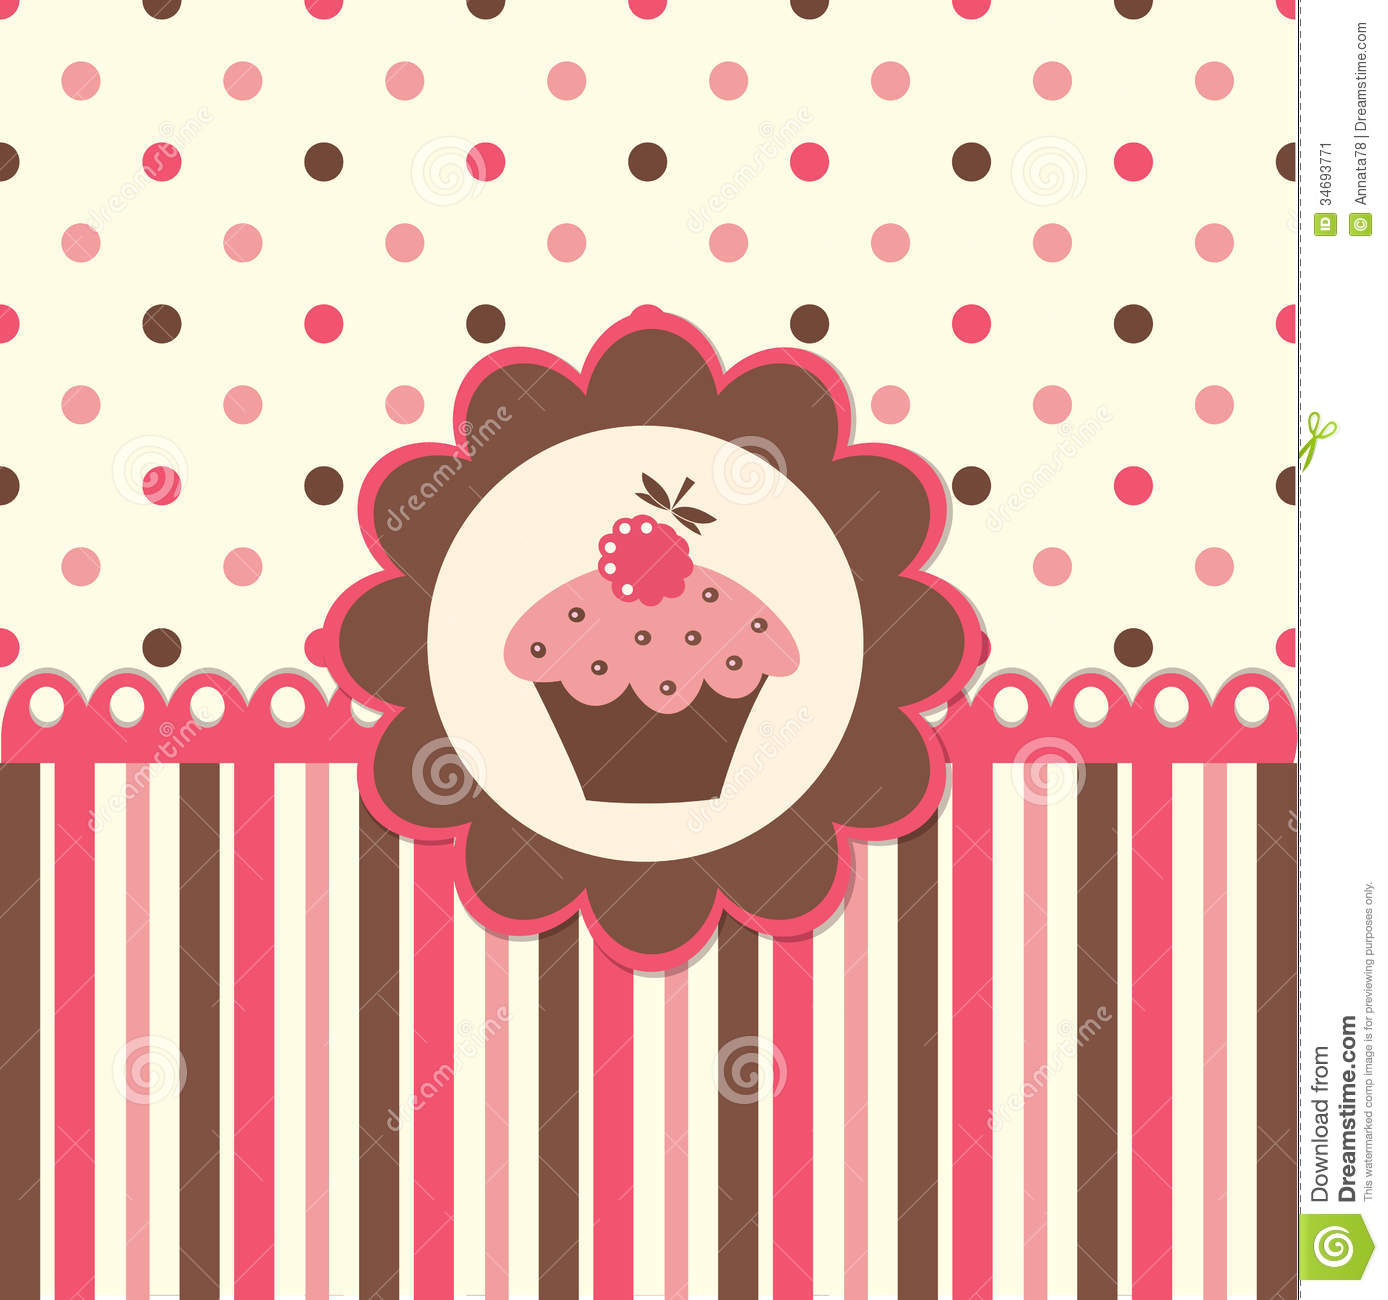 Download 72+ Cute Cupcake Wallpapers on WallpaperSafari